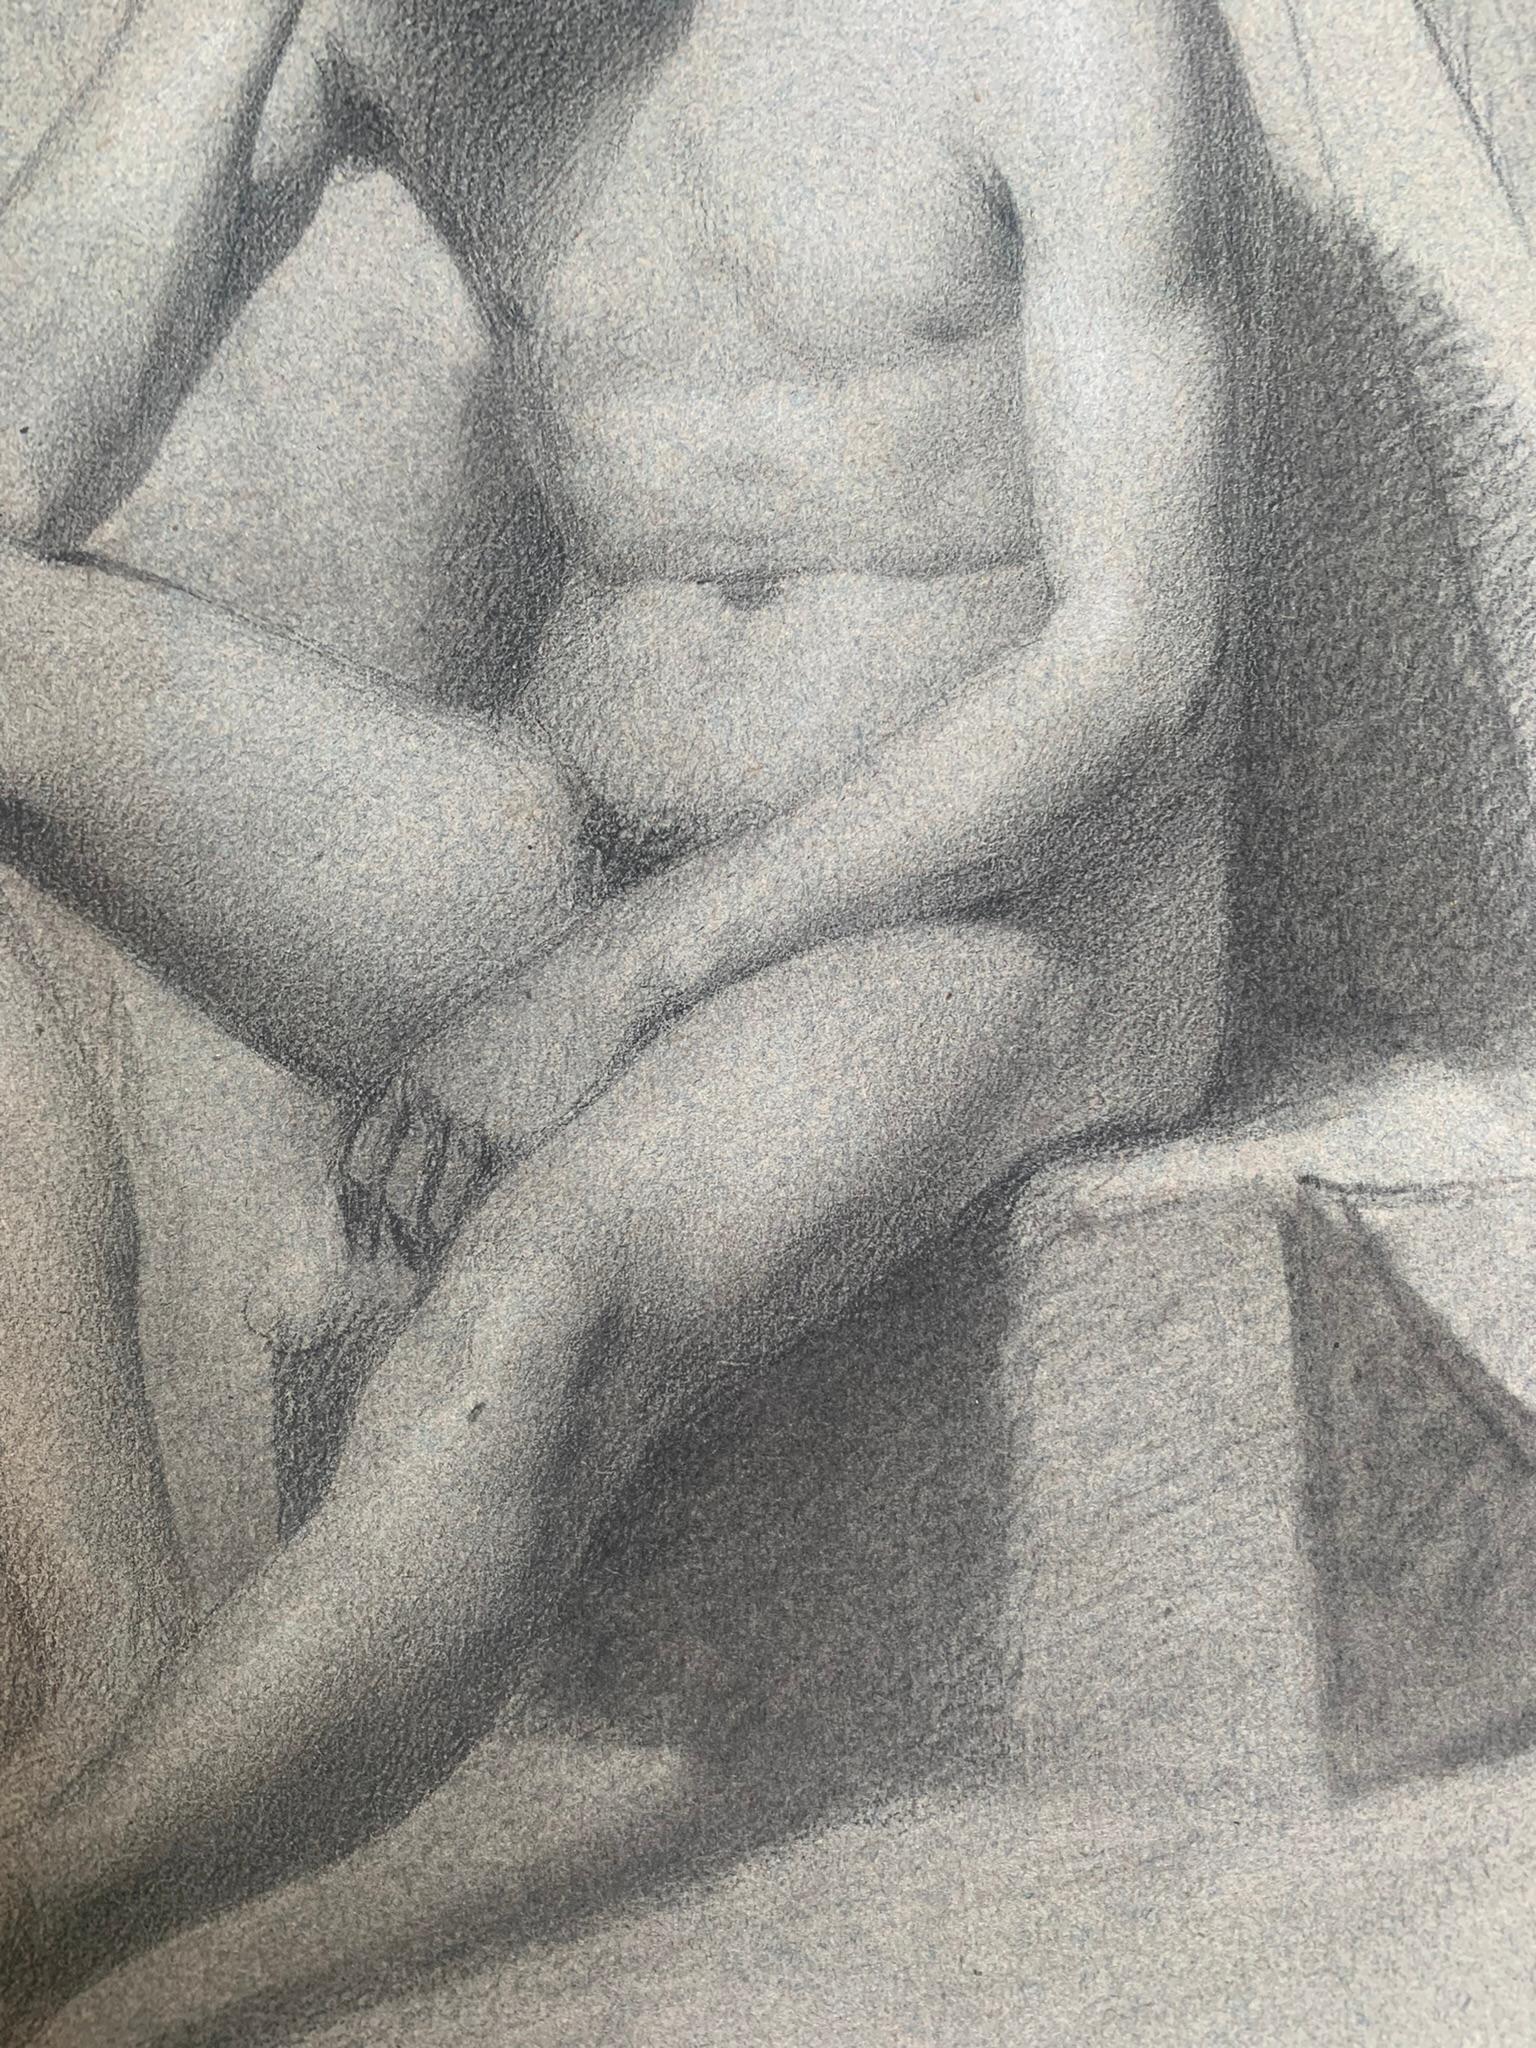 Dessin académique. Étude de figure d'un jeune homme nu assis. 19ème siècle. - Académique Art par Unknown